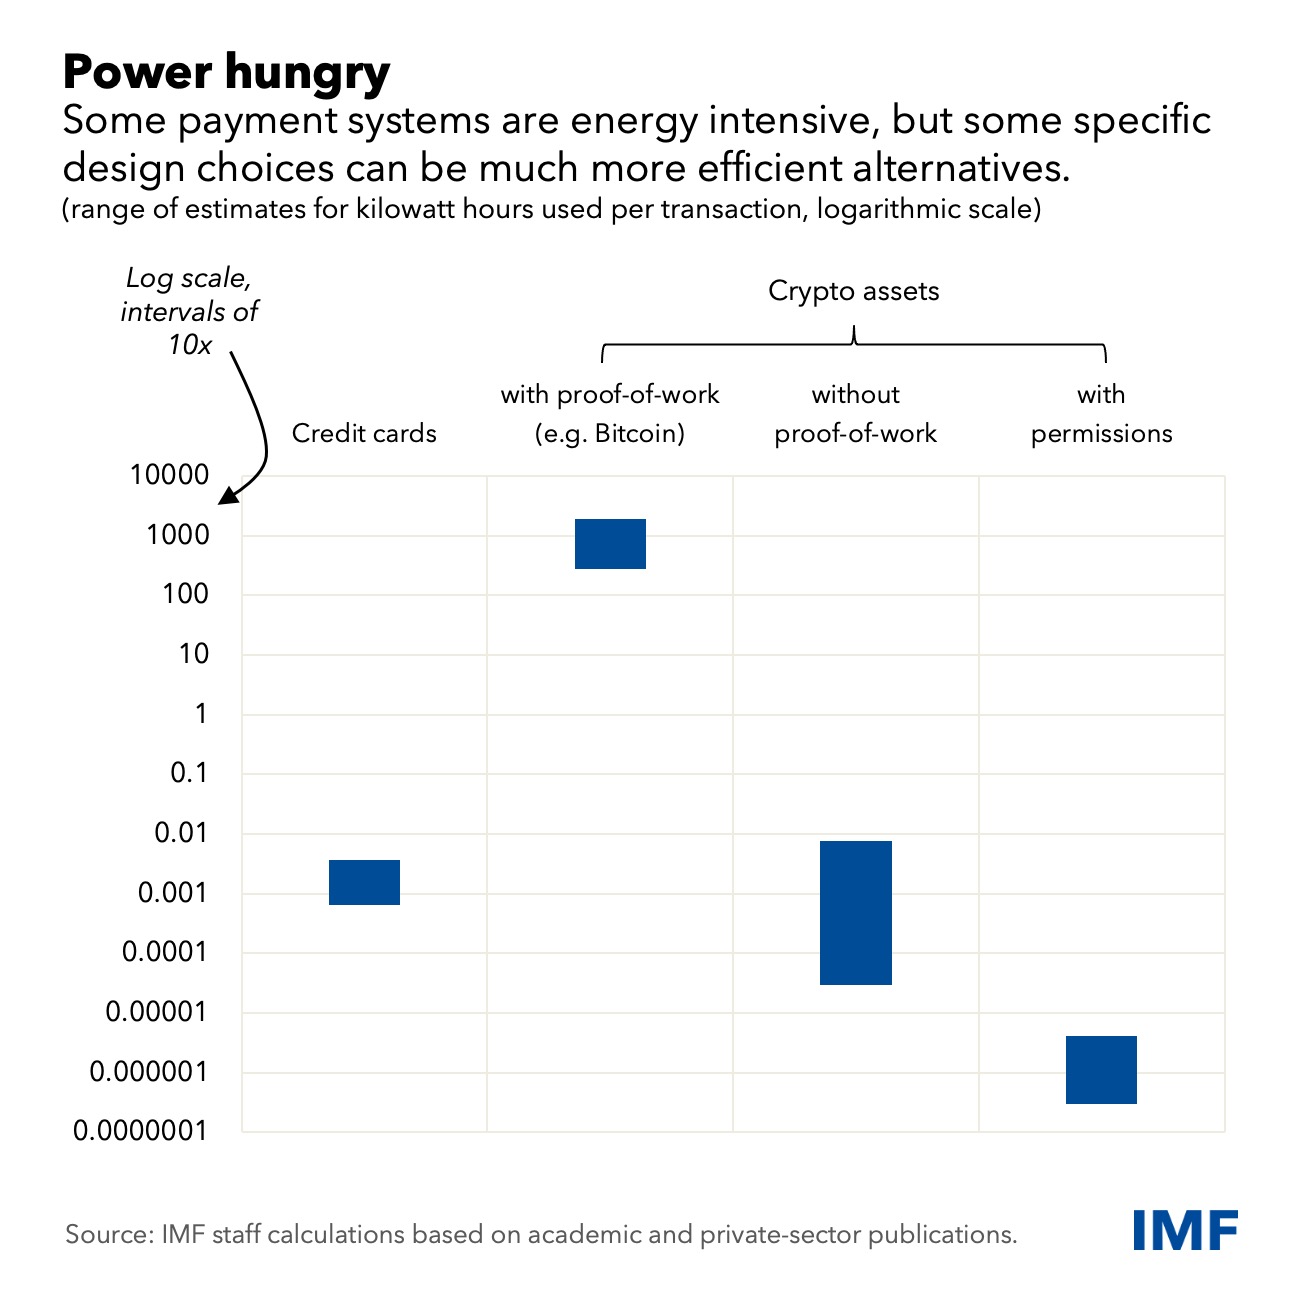 Биткоин потребляет в миллион раз больше энергии, чем кредитные карты: отчет МВФ